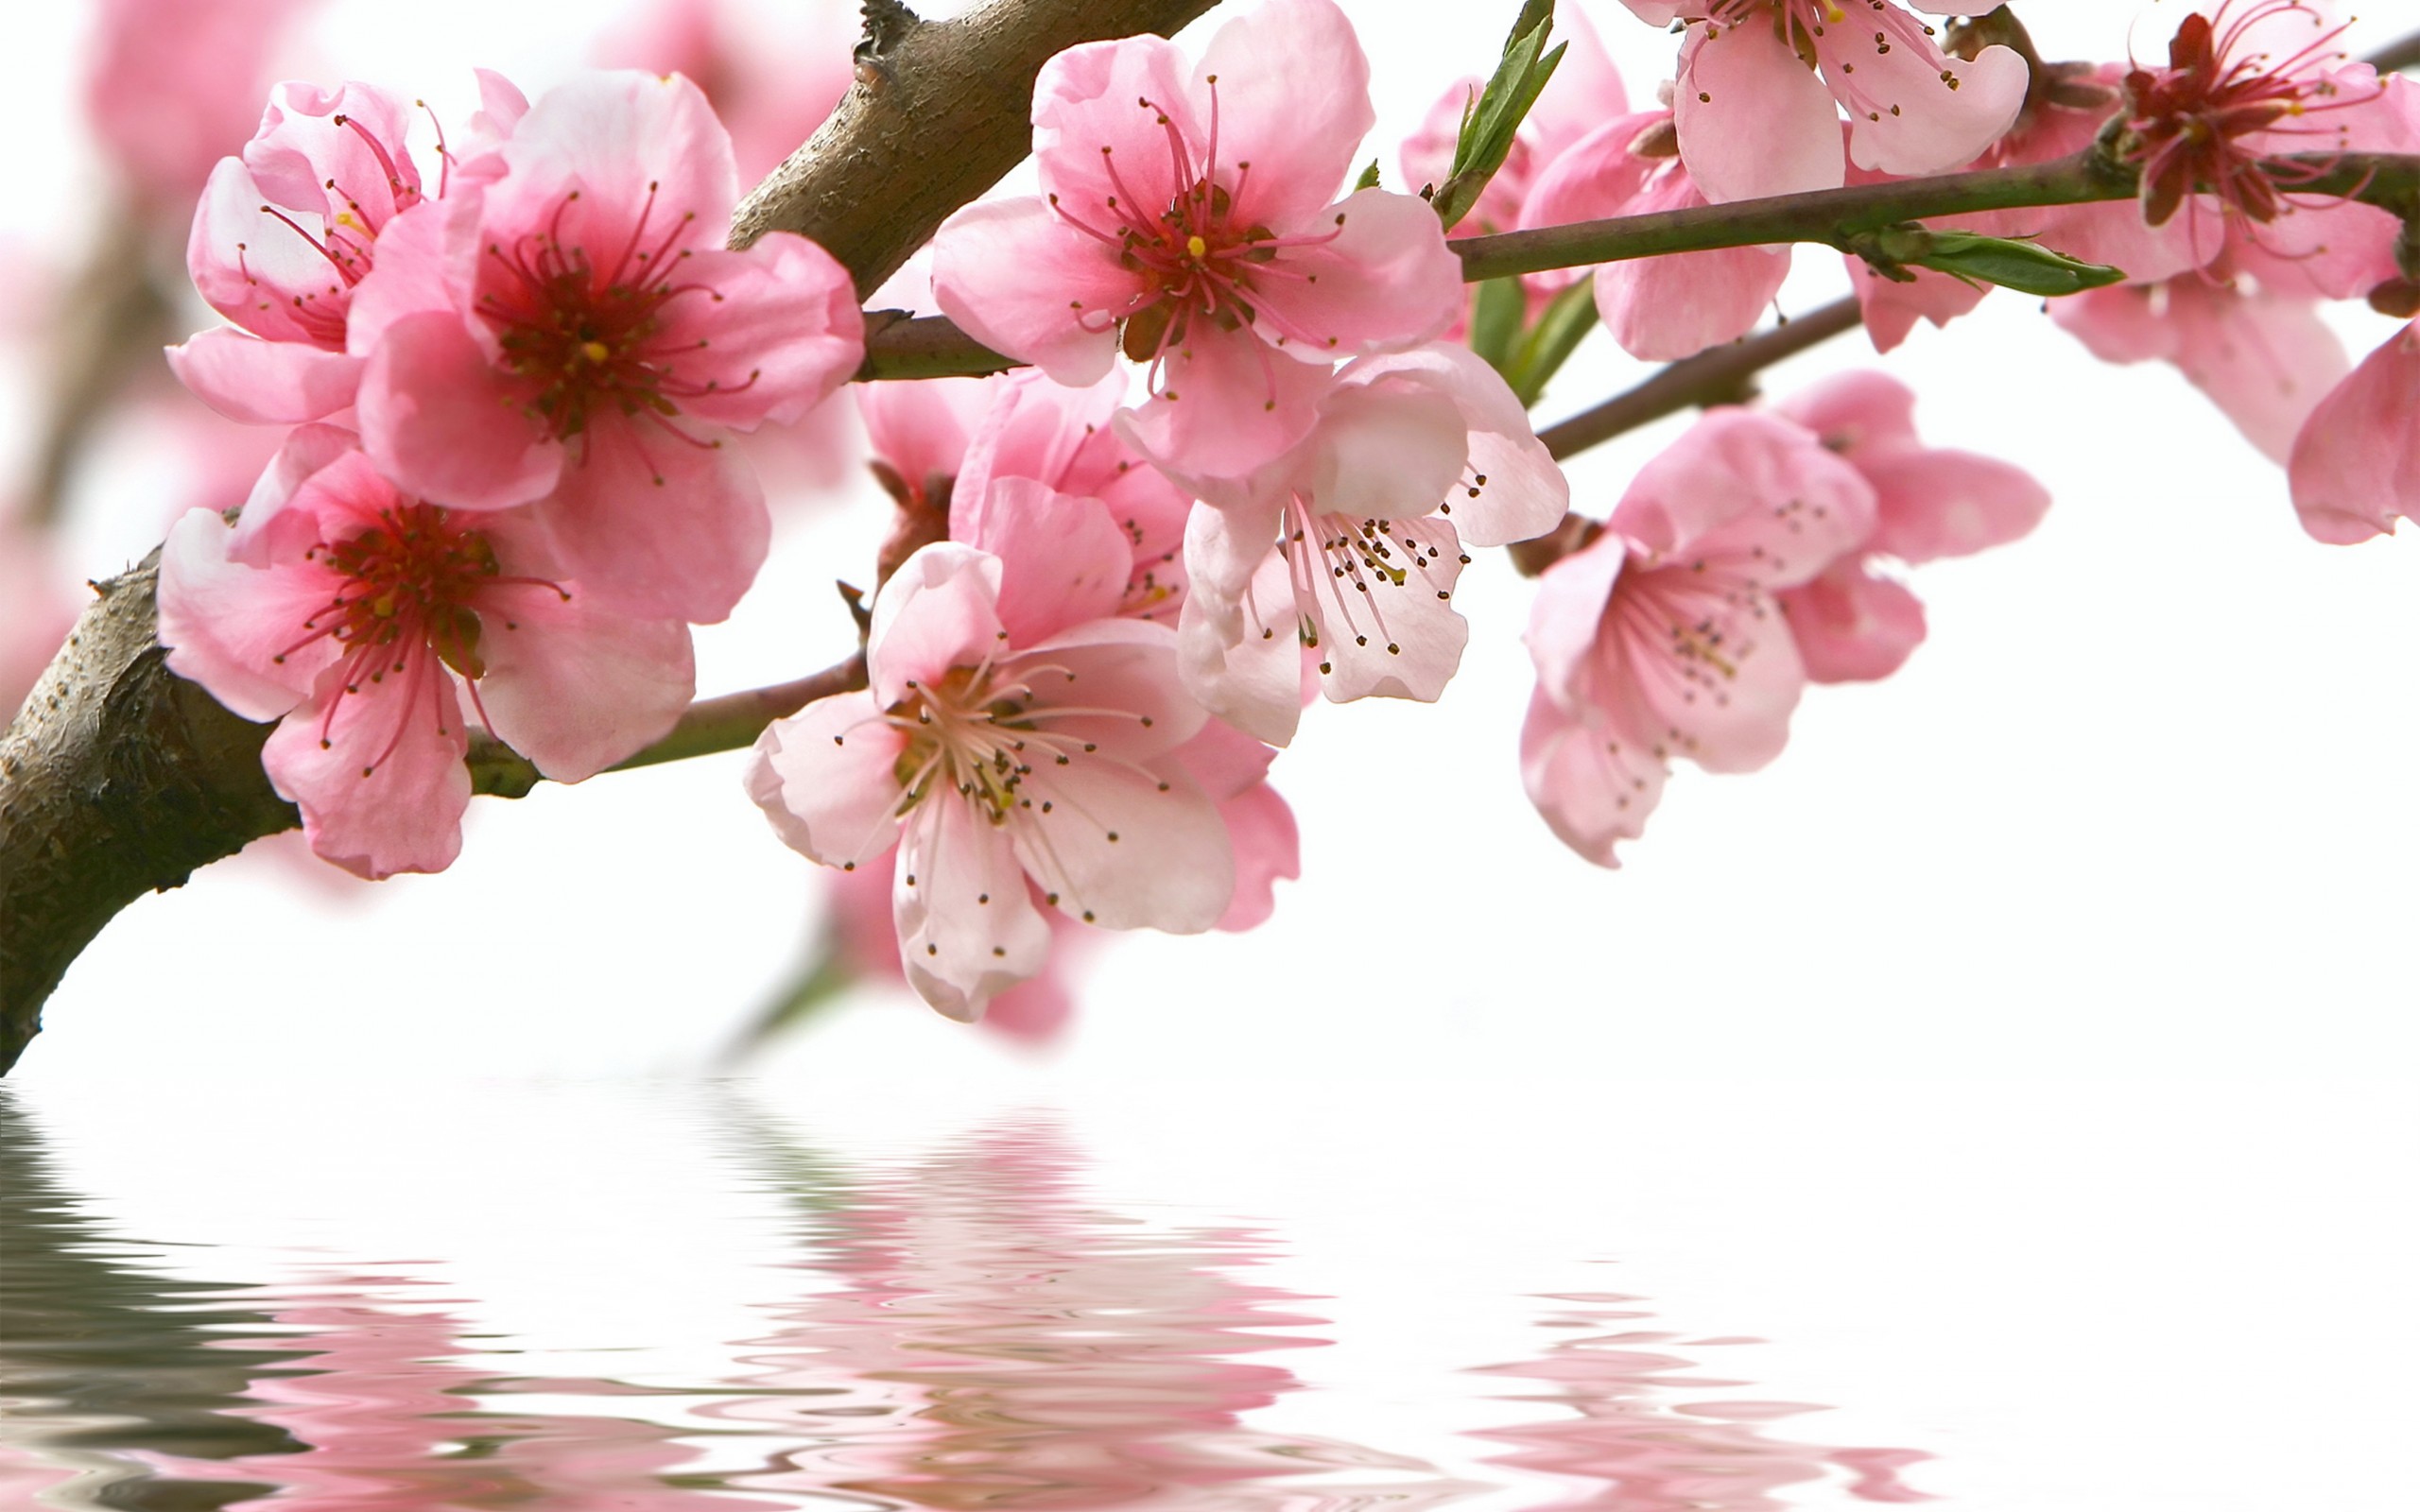 Spring Flowers Wallpaper Picture > Yodobi